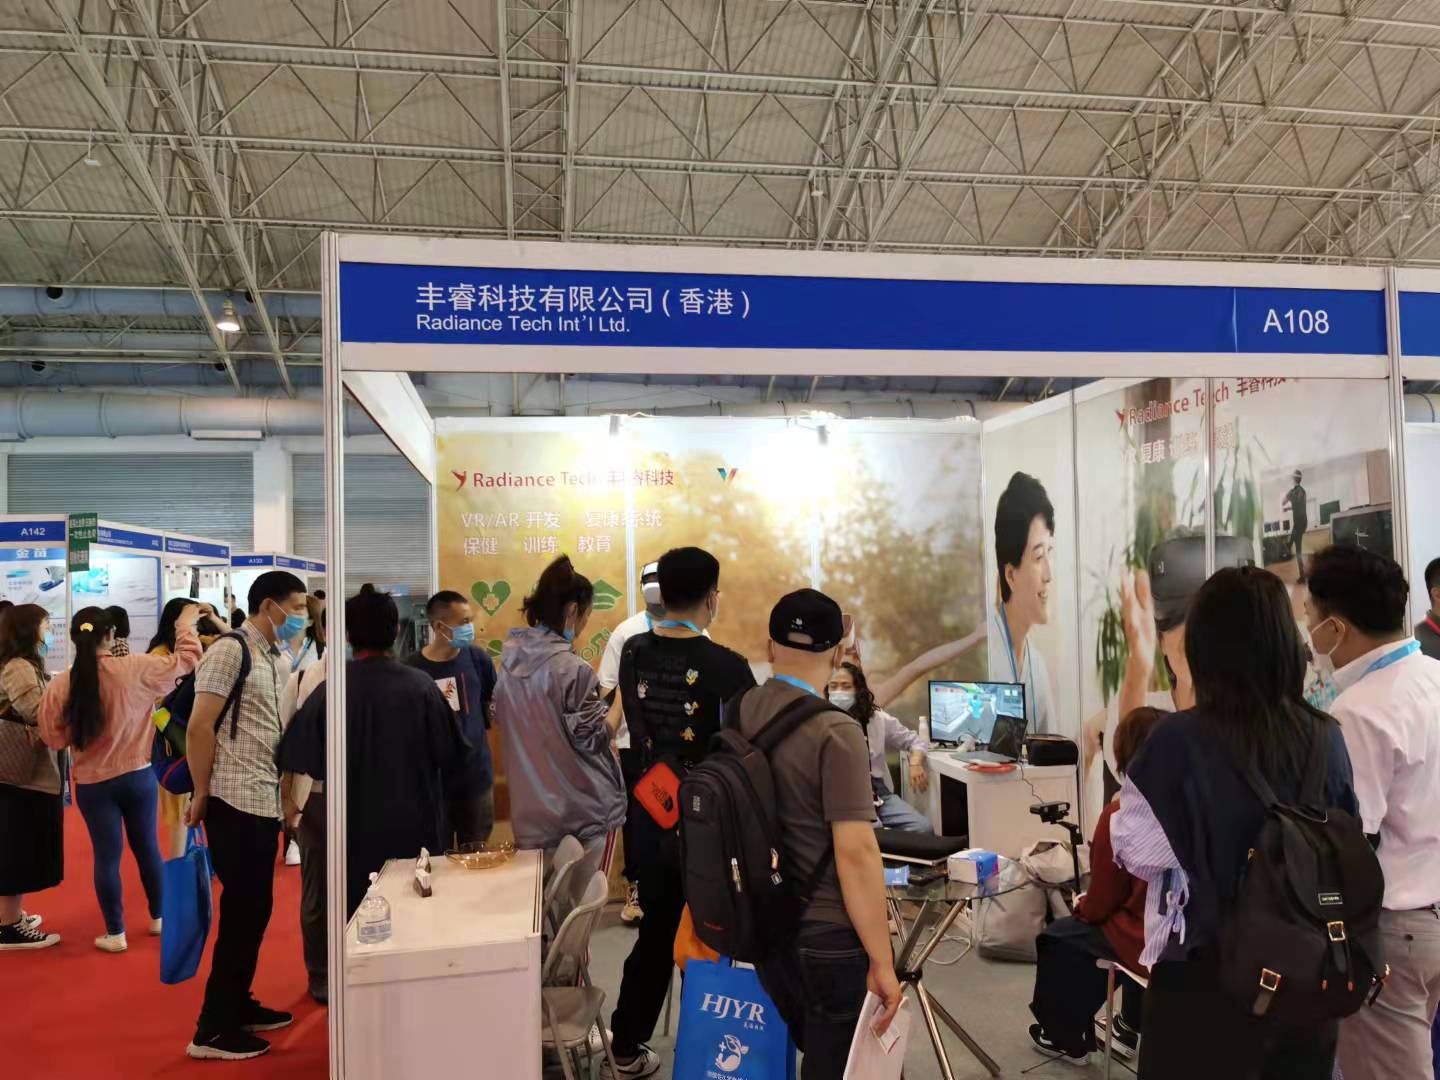 丰睿科技有限公司(香港)参加2021北京国际医疗展